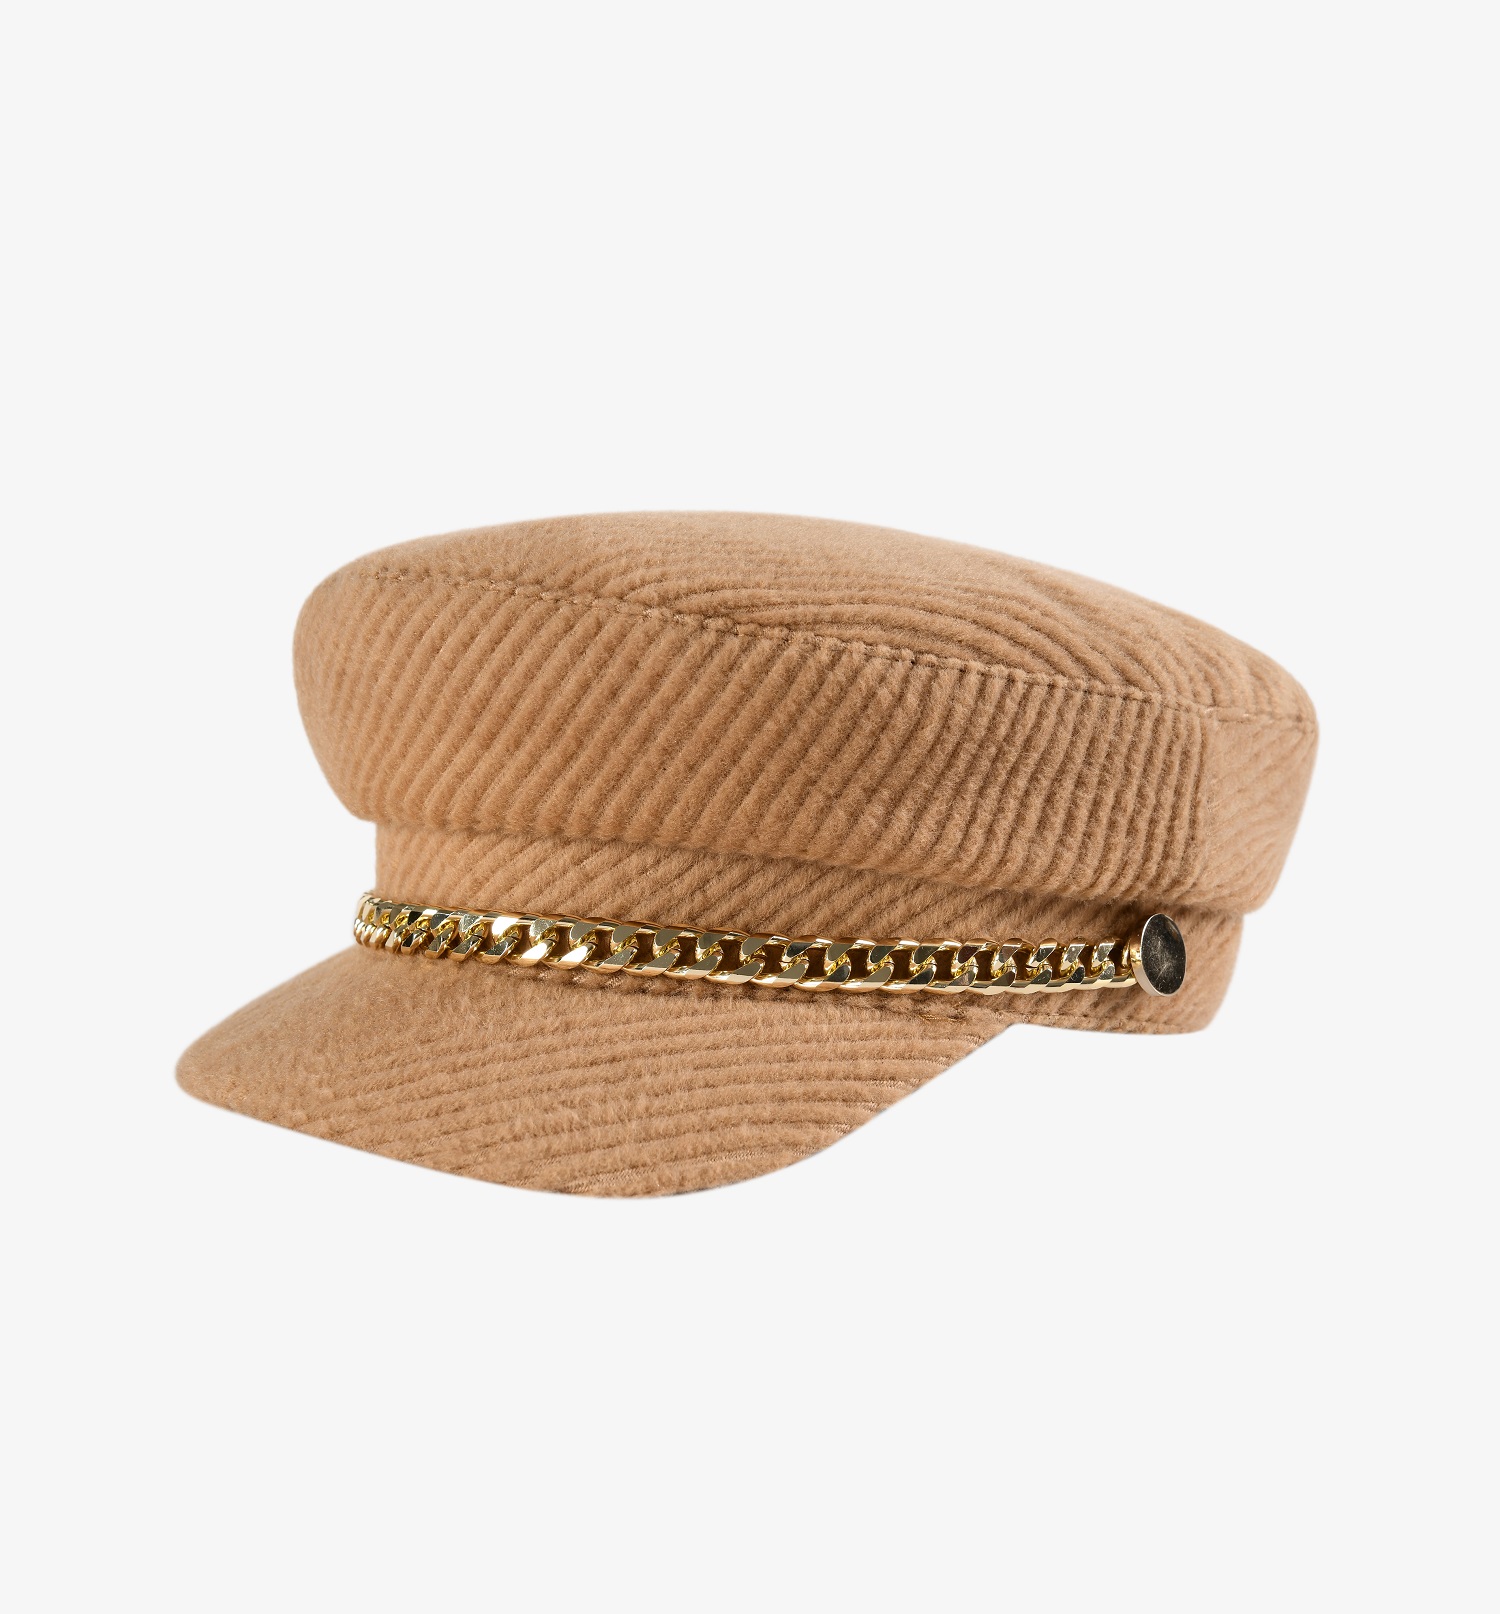 私人专属系列军帽造型时装帽